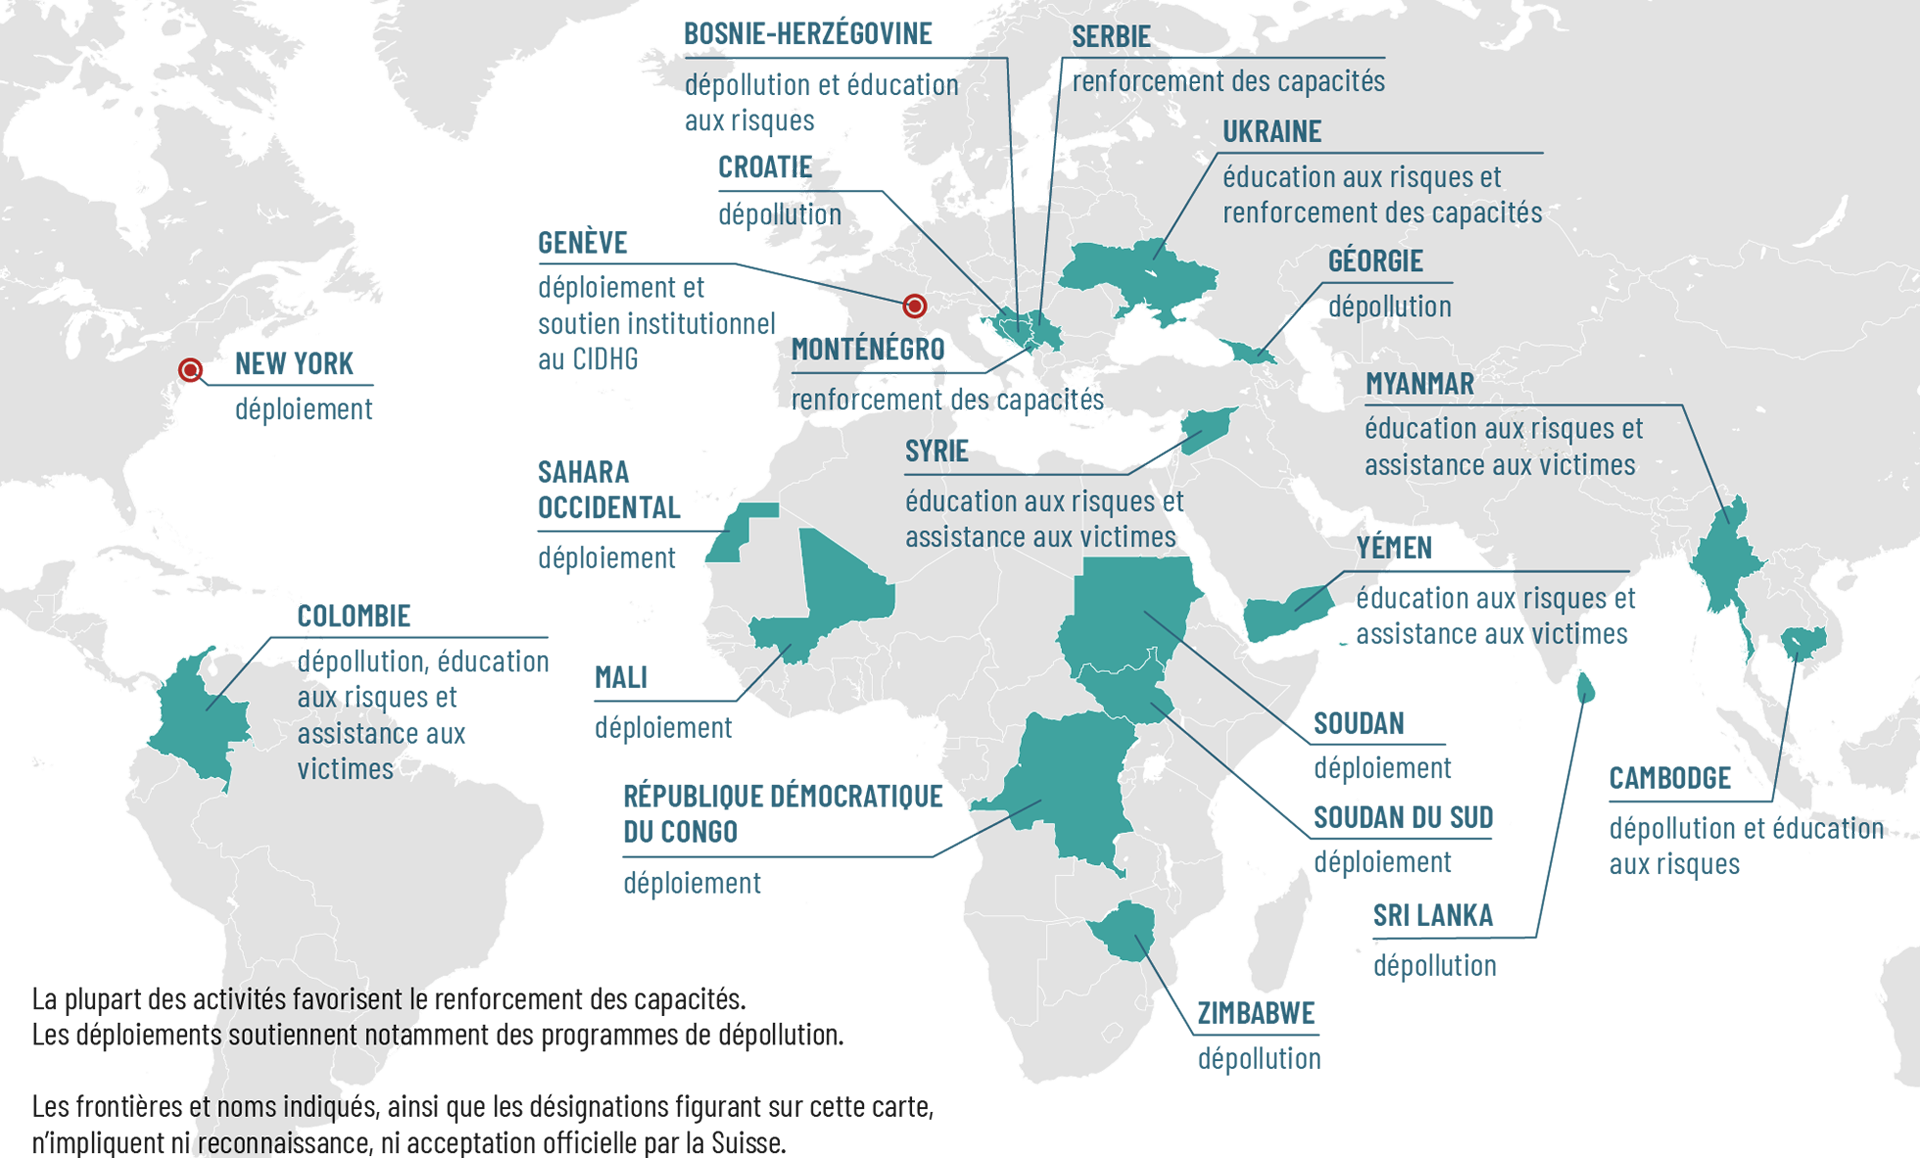 Carte du monde indiquant les pays où la Suisse mène une action contre les mines.